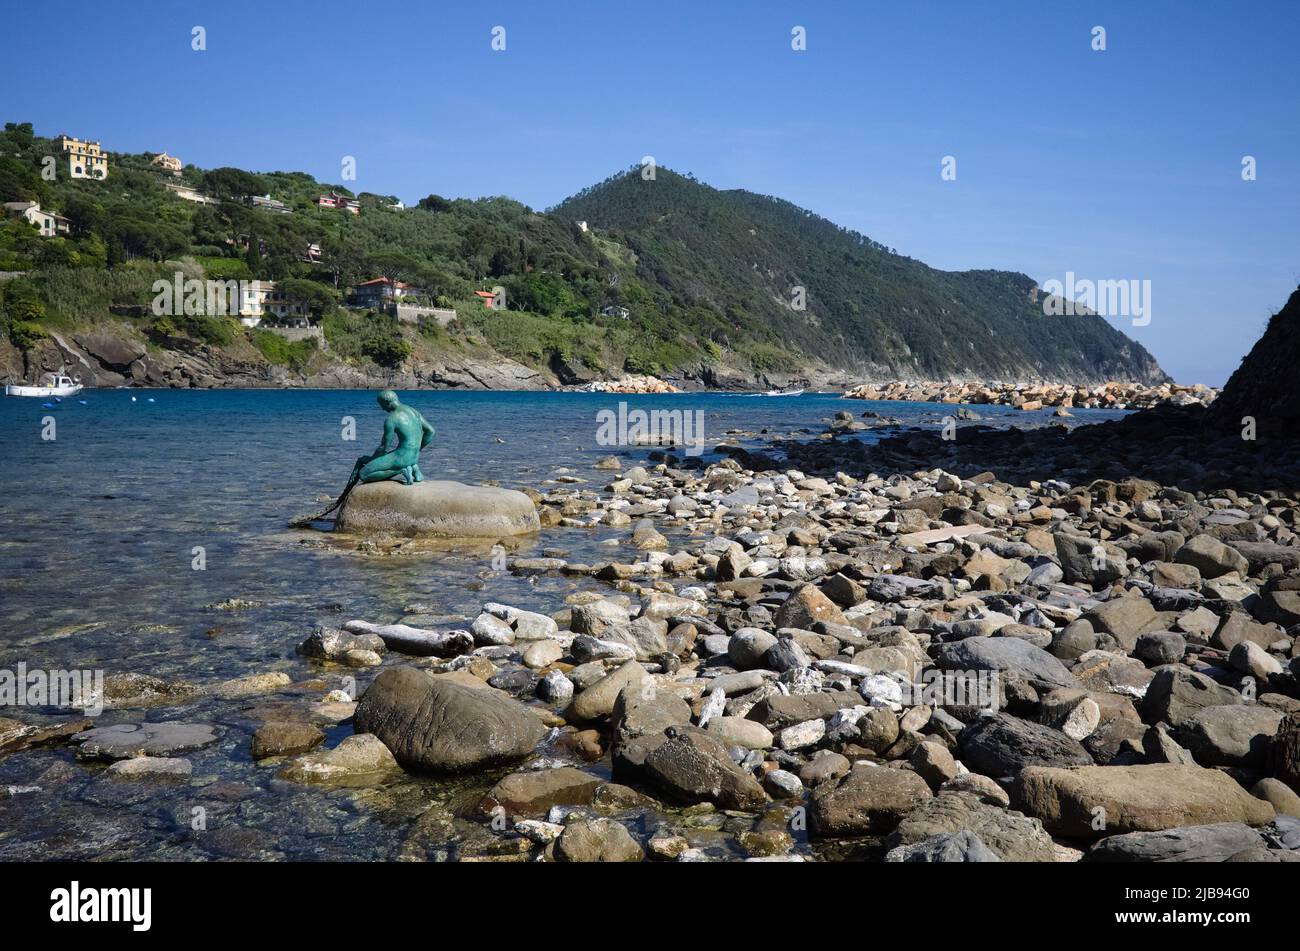 Monument en bronze au pêcheur avec filet de pêche dans ses mains assis sur la pierre sur le rivage de la baie de Baia del Silenzio en mer Ligurienne, Sestri Levante, Italie. Banque D'Images